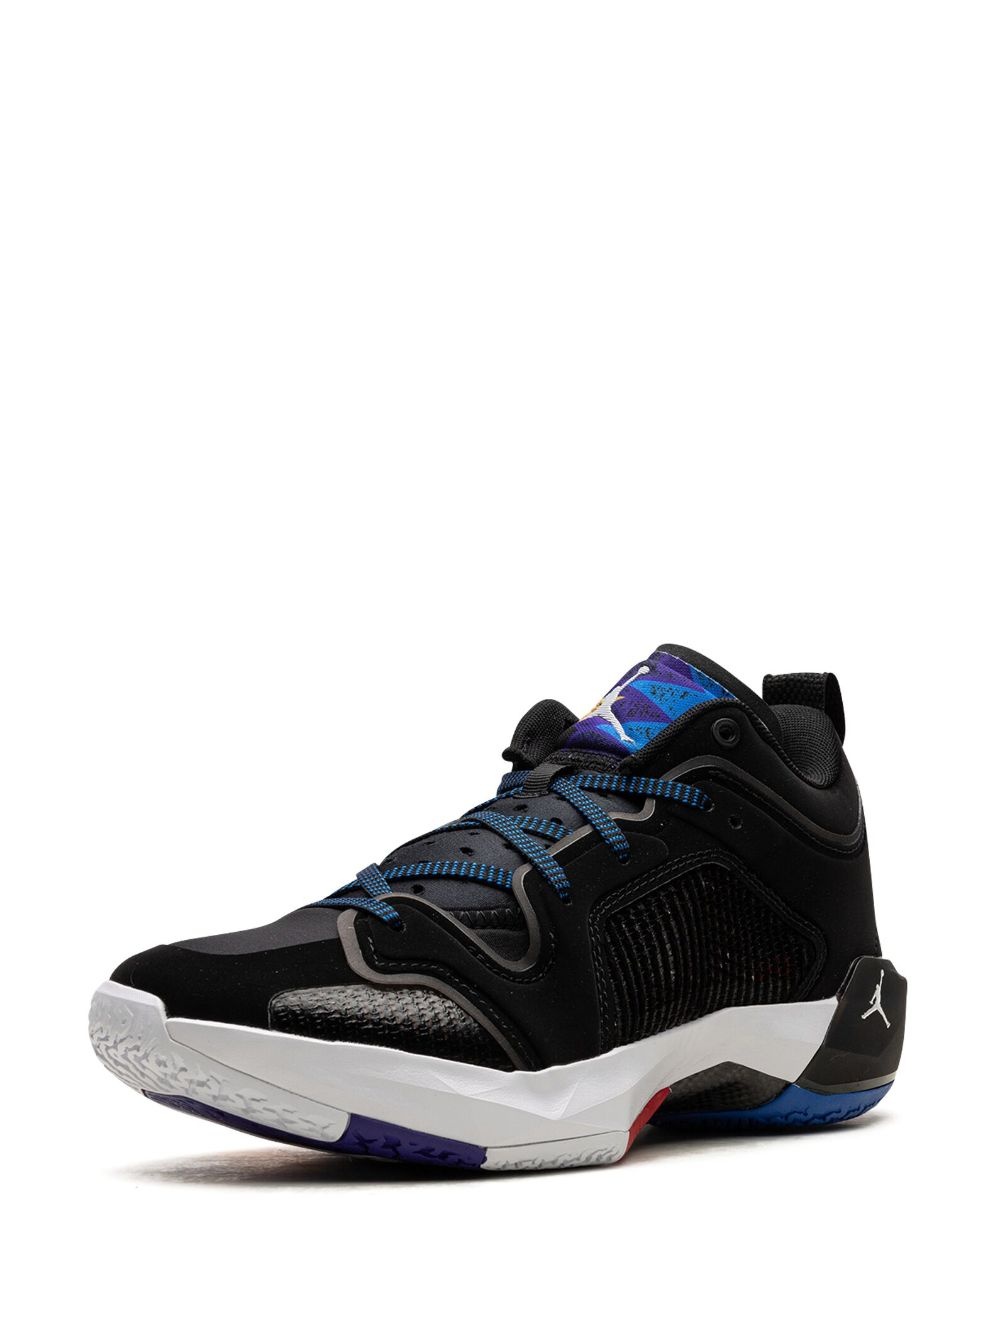 Air Jordan XXXVII "Nothing But Net" sneakers - 5